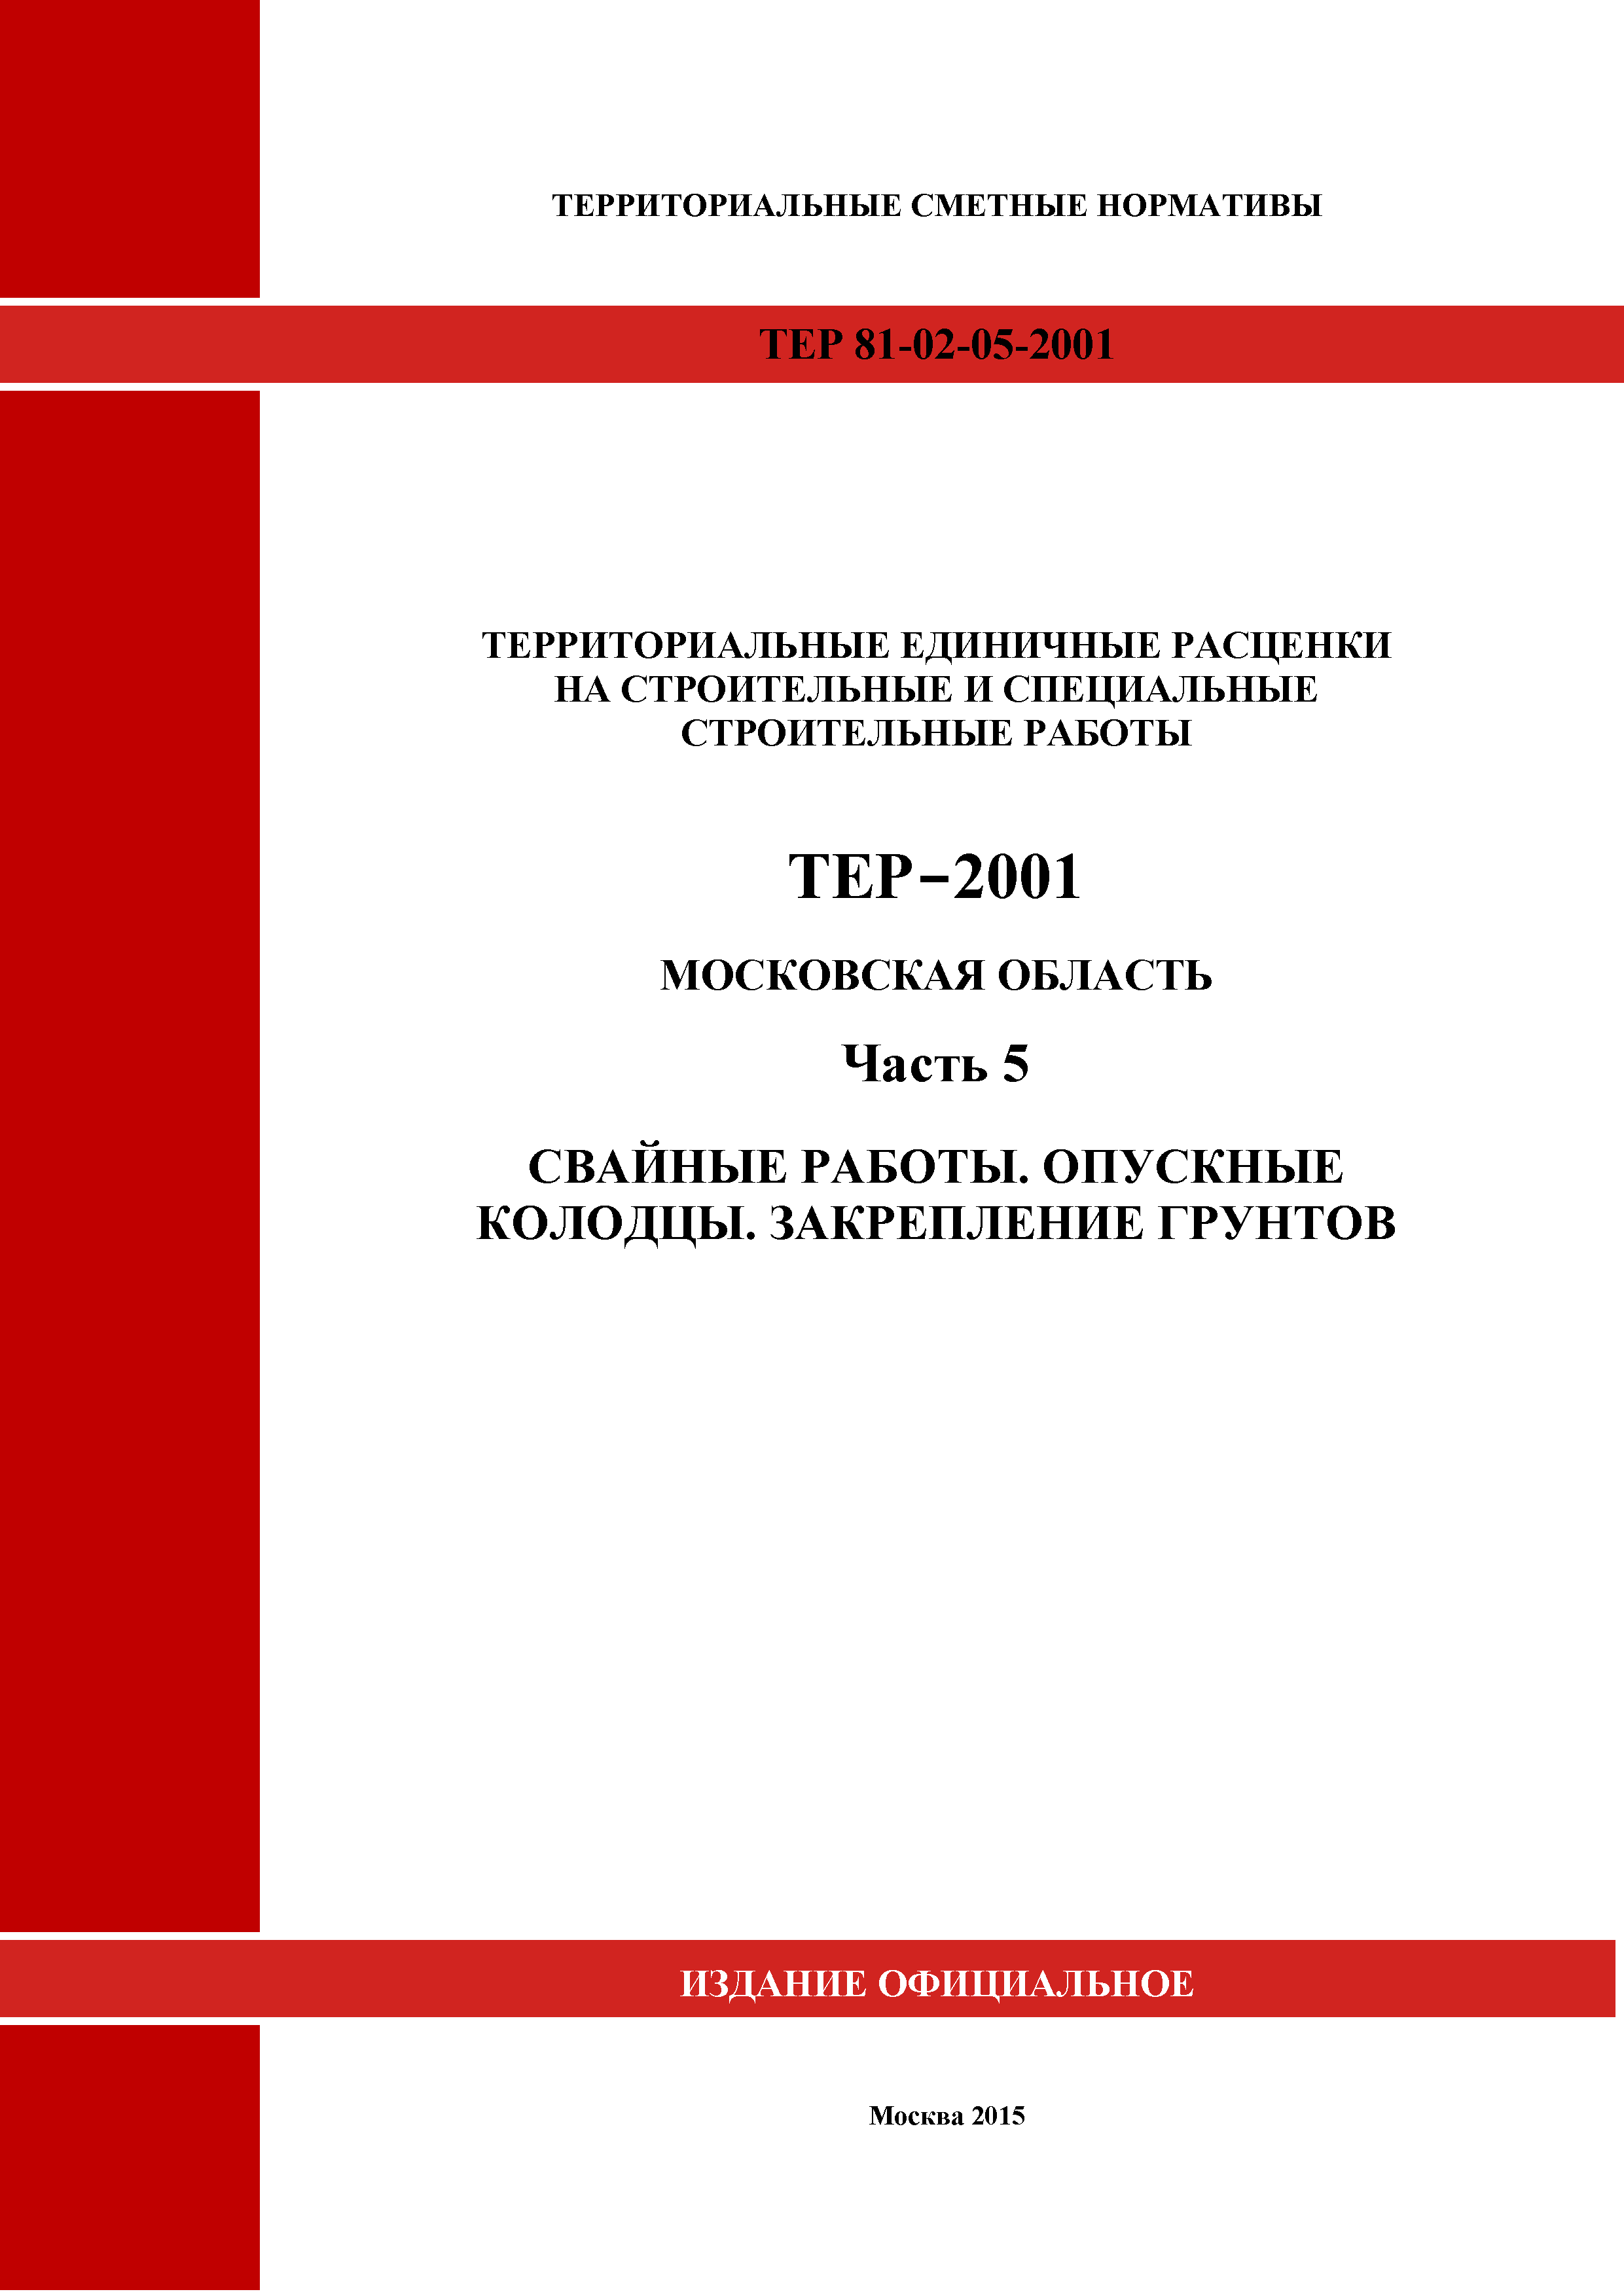 ТЕР 5-2001 Московской области